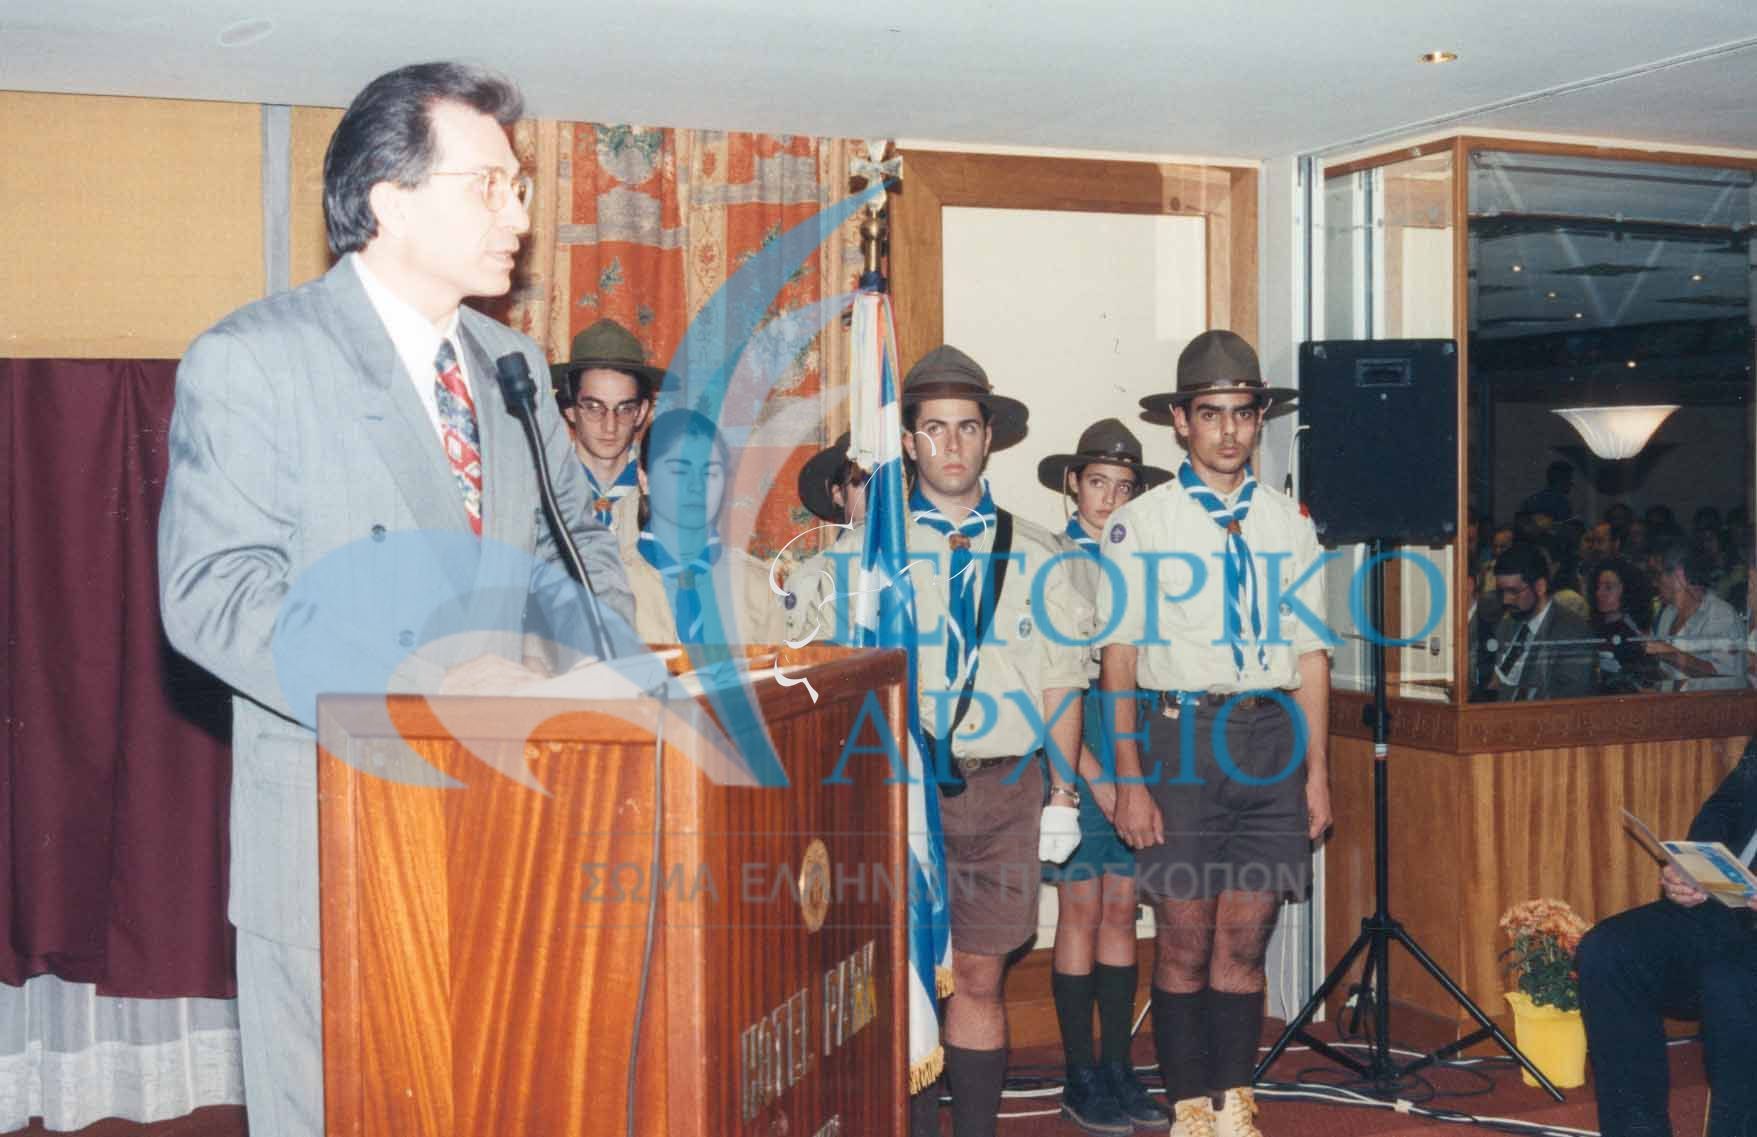 Ο Υφυπουργός Εθνικής Παιδείας & Θρησκευμάτων Ιωαν. Ανθόπουλος απευθύνει χαιρετισμό κατά την έναρξη του 15ου Πανελλήνιου Προσκοπικού Συνεδρίου στην Αθήνα το 1996.